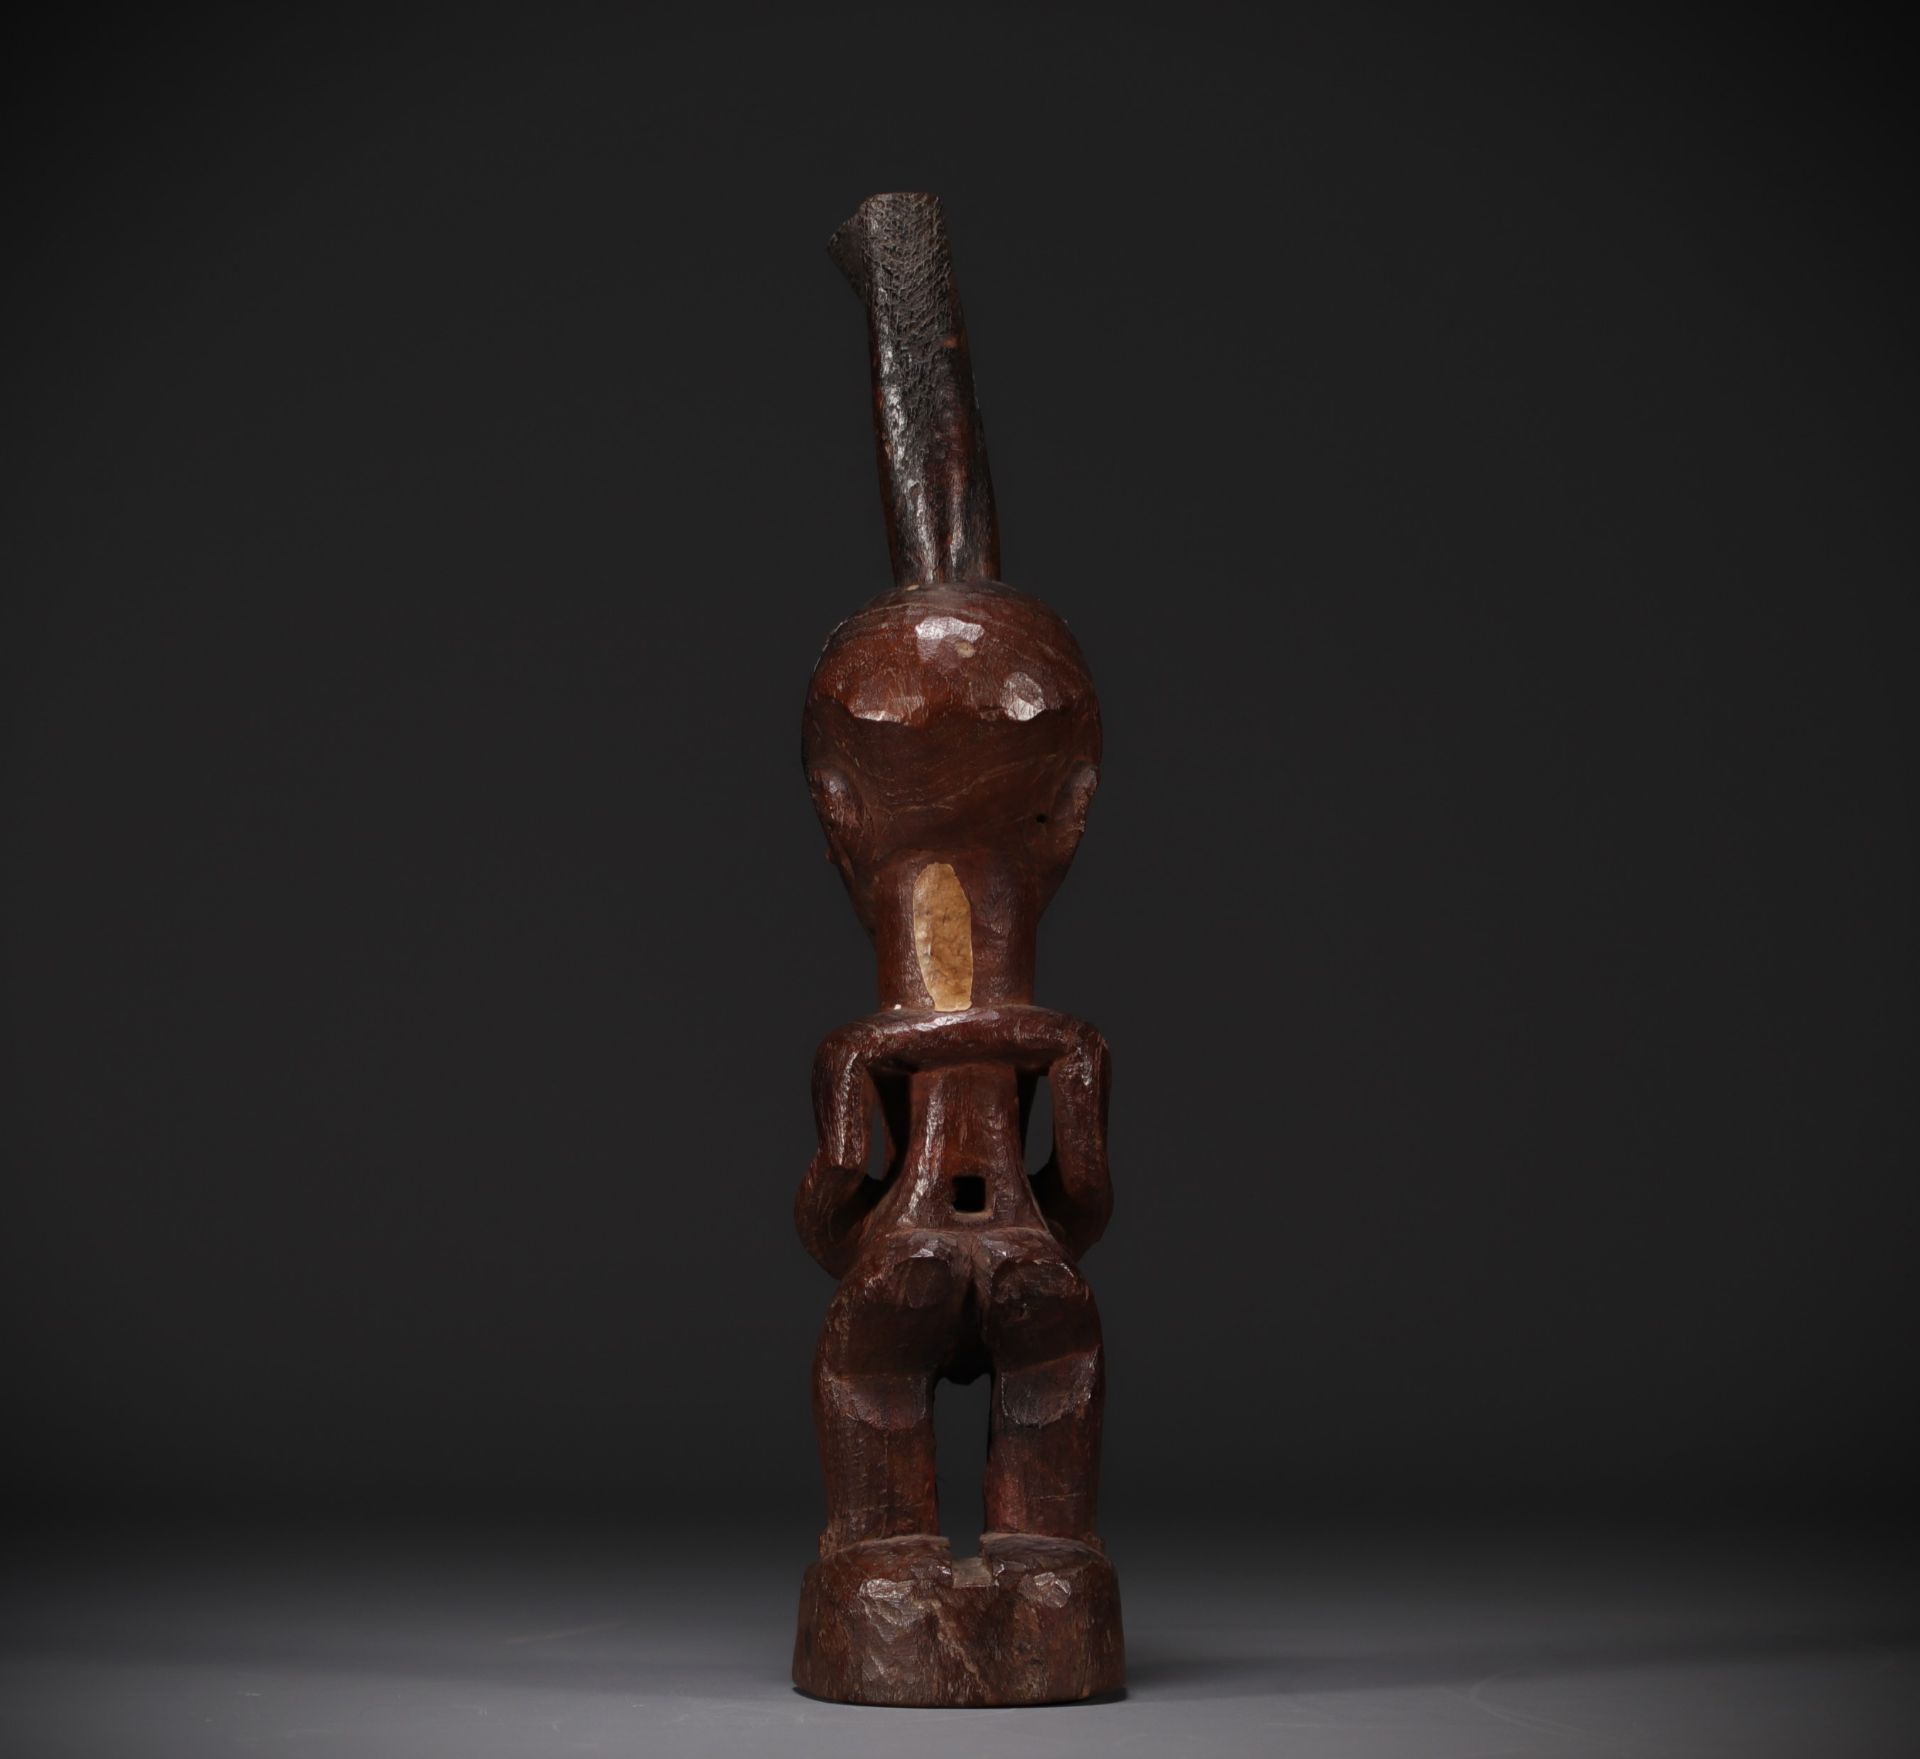 SONGYE figure - Sankuru/Lubefu style collected around 1900 - Rep.Dem.Congo - Image 5 of 8